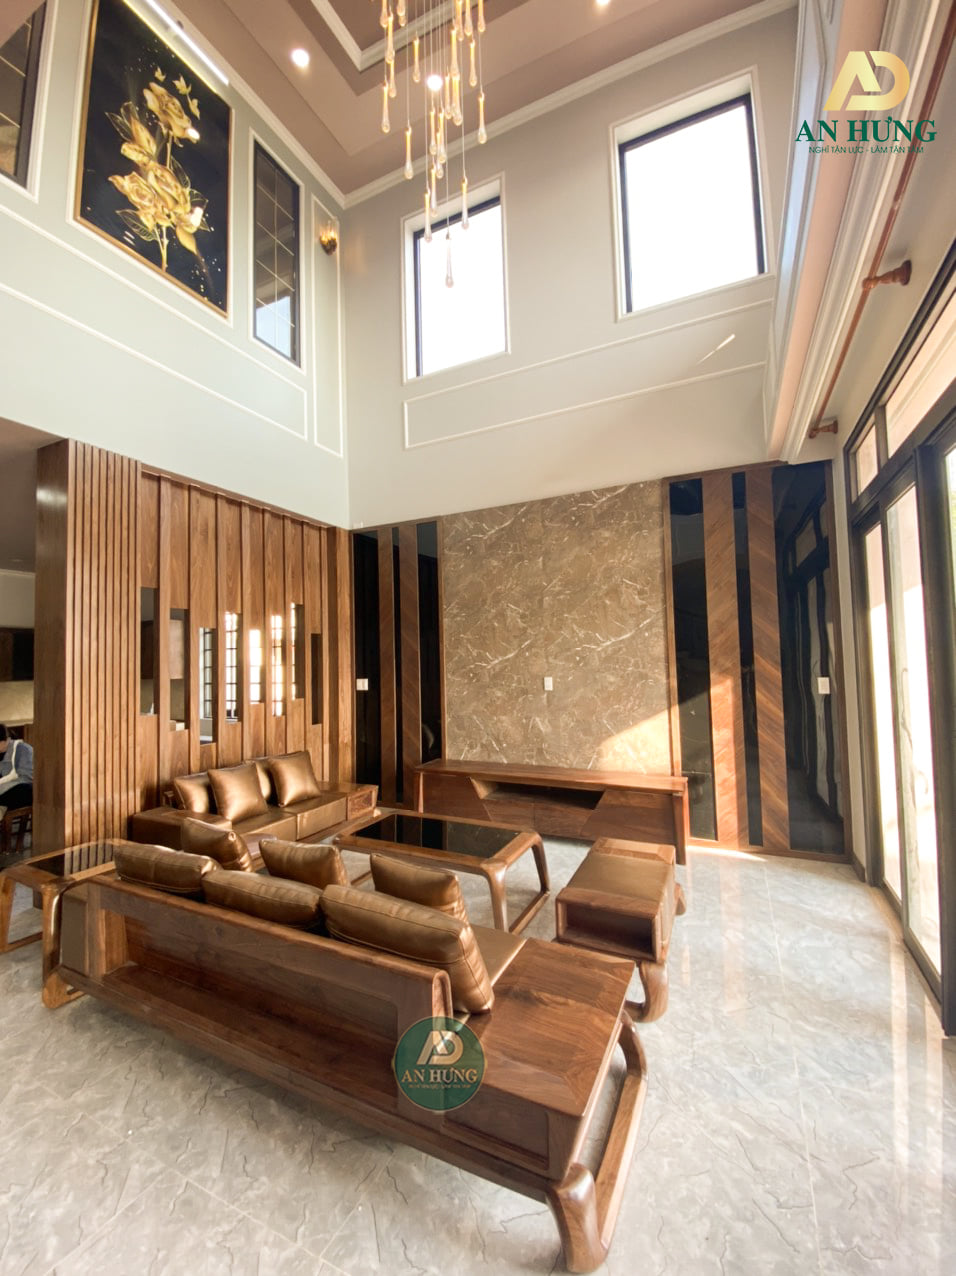 Vách ốp tường gỗ óc chó cao cấp, được ưa chuộng sử dụng trong nhiều thiết kế nội thất nhà ở hiện nay